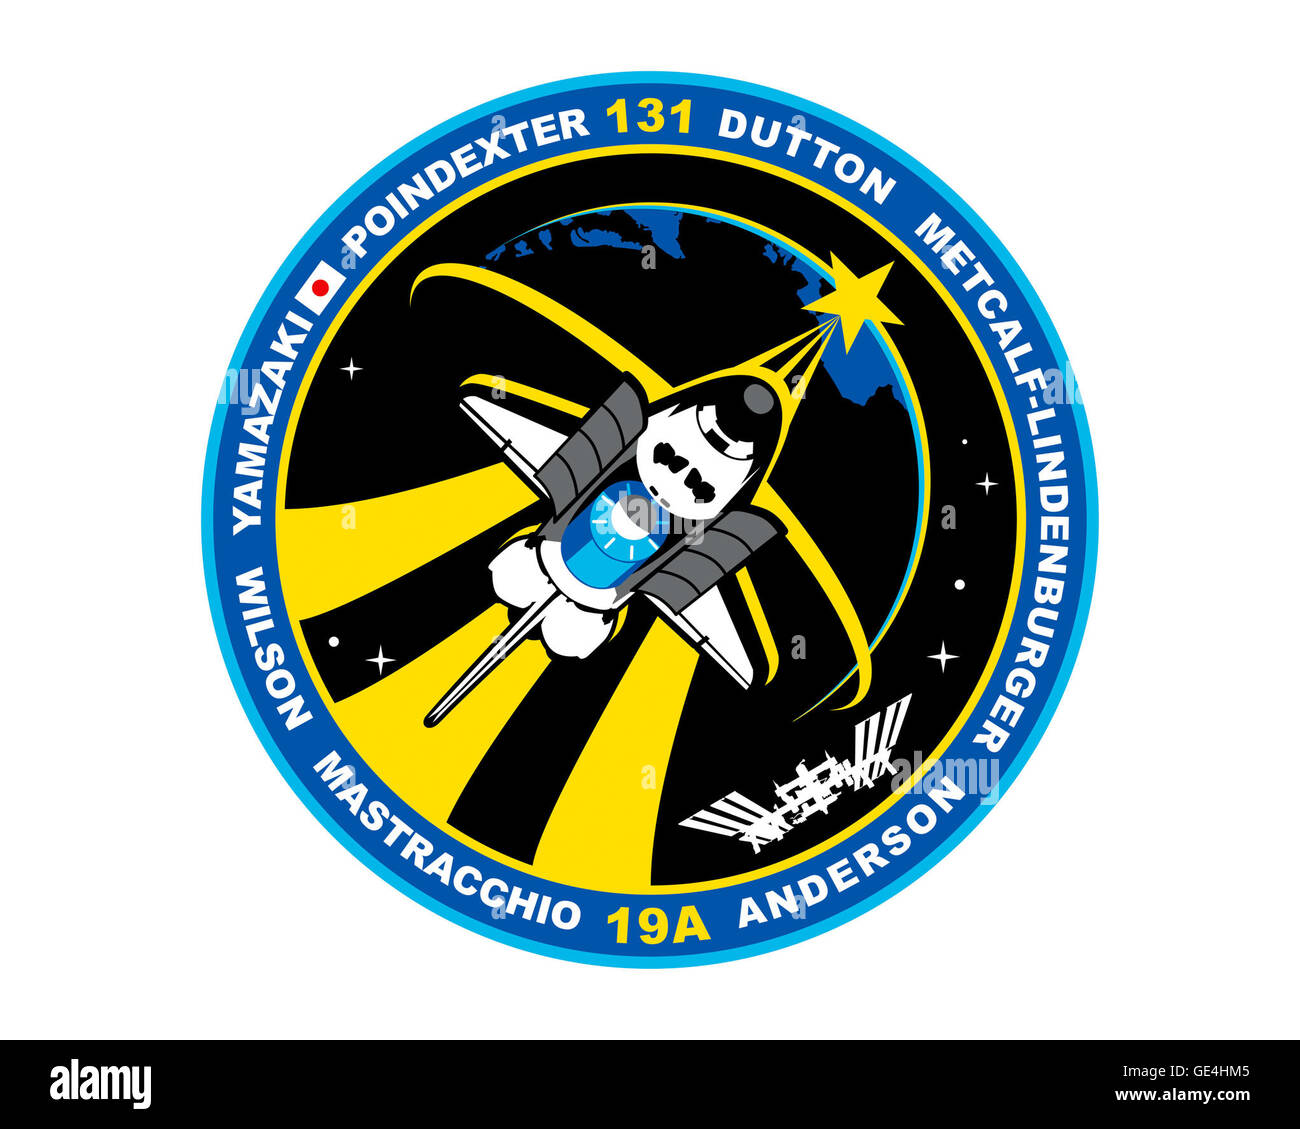 Lanzamiento: Abril 5, 2010, 6:21am EDT Desembarque: Abril 20, 2010, 9:08 am EDT, el Centro Espacial Kennedy: La tripulación del Transbordador Espacial Discovery: G. el Comandante Alan Poindexter, el piloto James P. Dutton Jr., especialistas de misión Clayton C. Anderson, Rick Mastracchio, Dorothy M. Metcalf-Lindenburger, Stephanie D. Wilson, Naoko Yamazaki durante la STS-131, Discovery entregó un módulo logístico multi-propósito lleno de ciencia racks que fueron trasladados a los laboratorios en la Estación Espacial Internacional. La misión contó con tres paseos espaciales realizados por Mastracchio y Anderson. Se sustituye un conjunto de depósito de amoníaco, retr Foto de stock